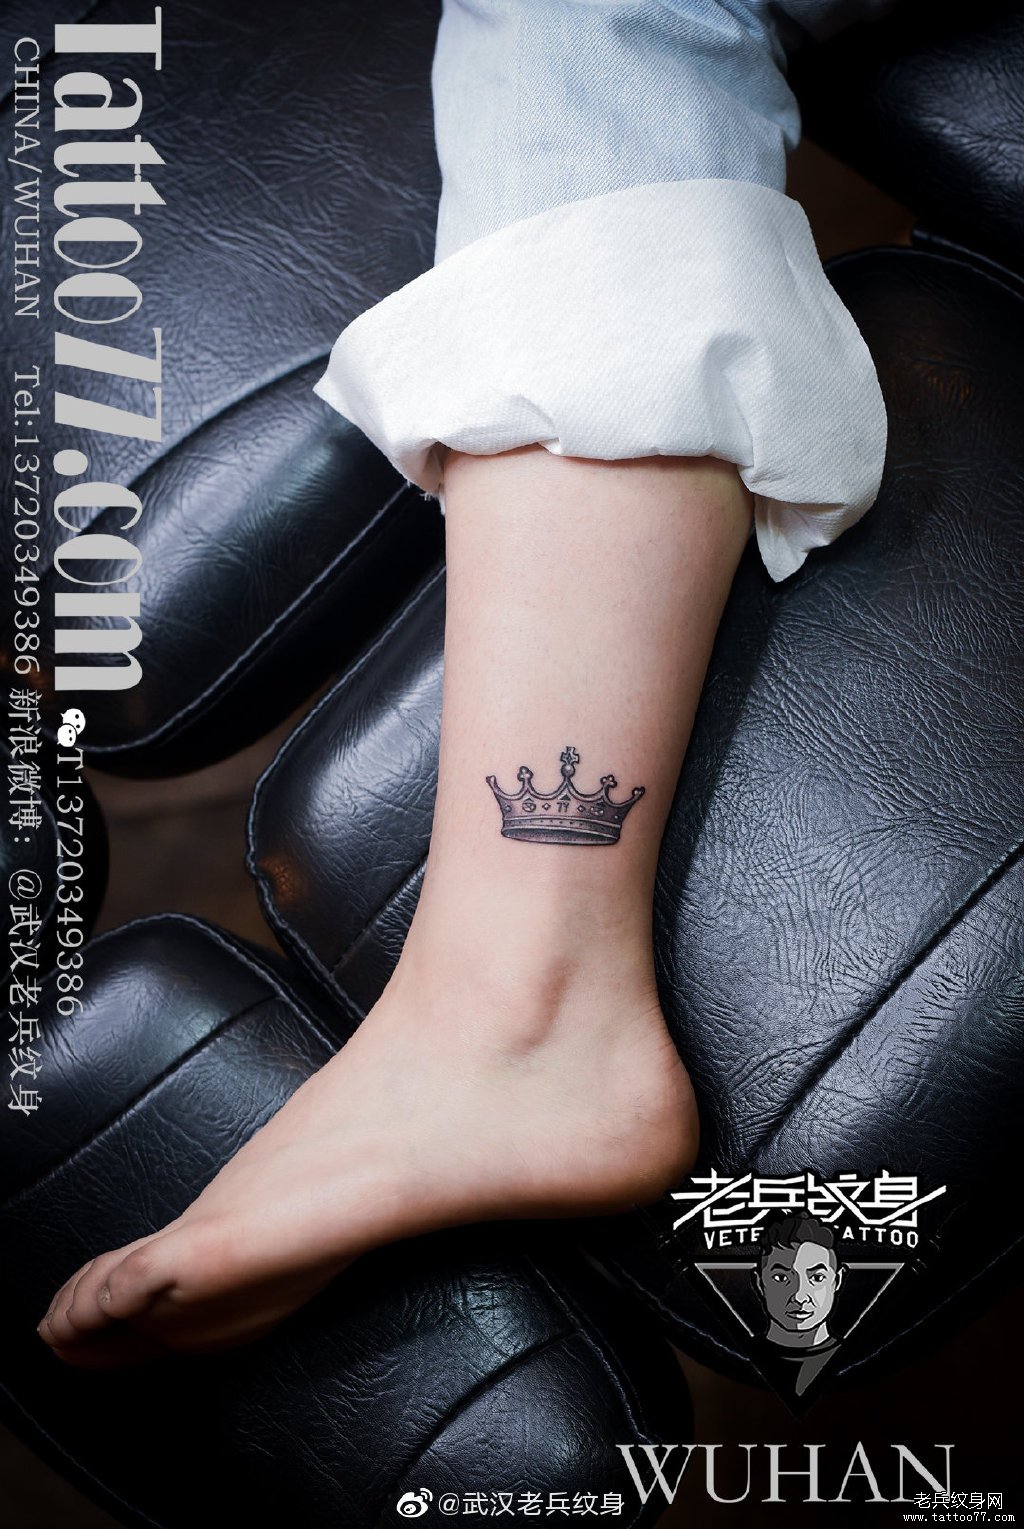 皇冠：只想做自己心中的女王 - 纹身大杂烩 武汉老兵纹身